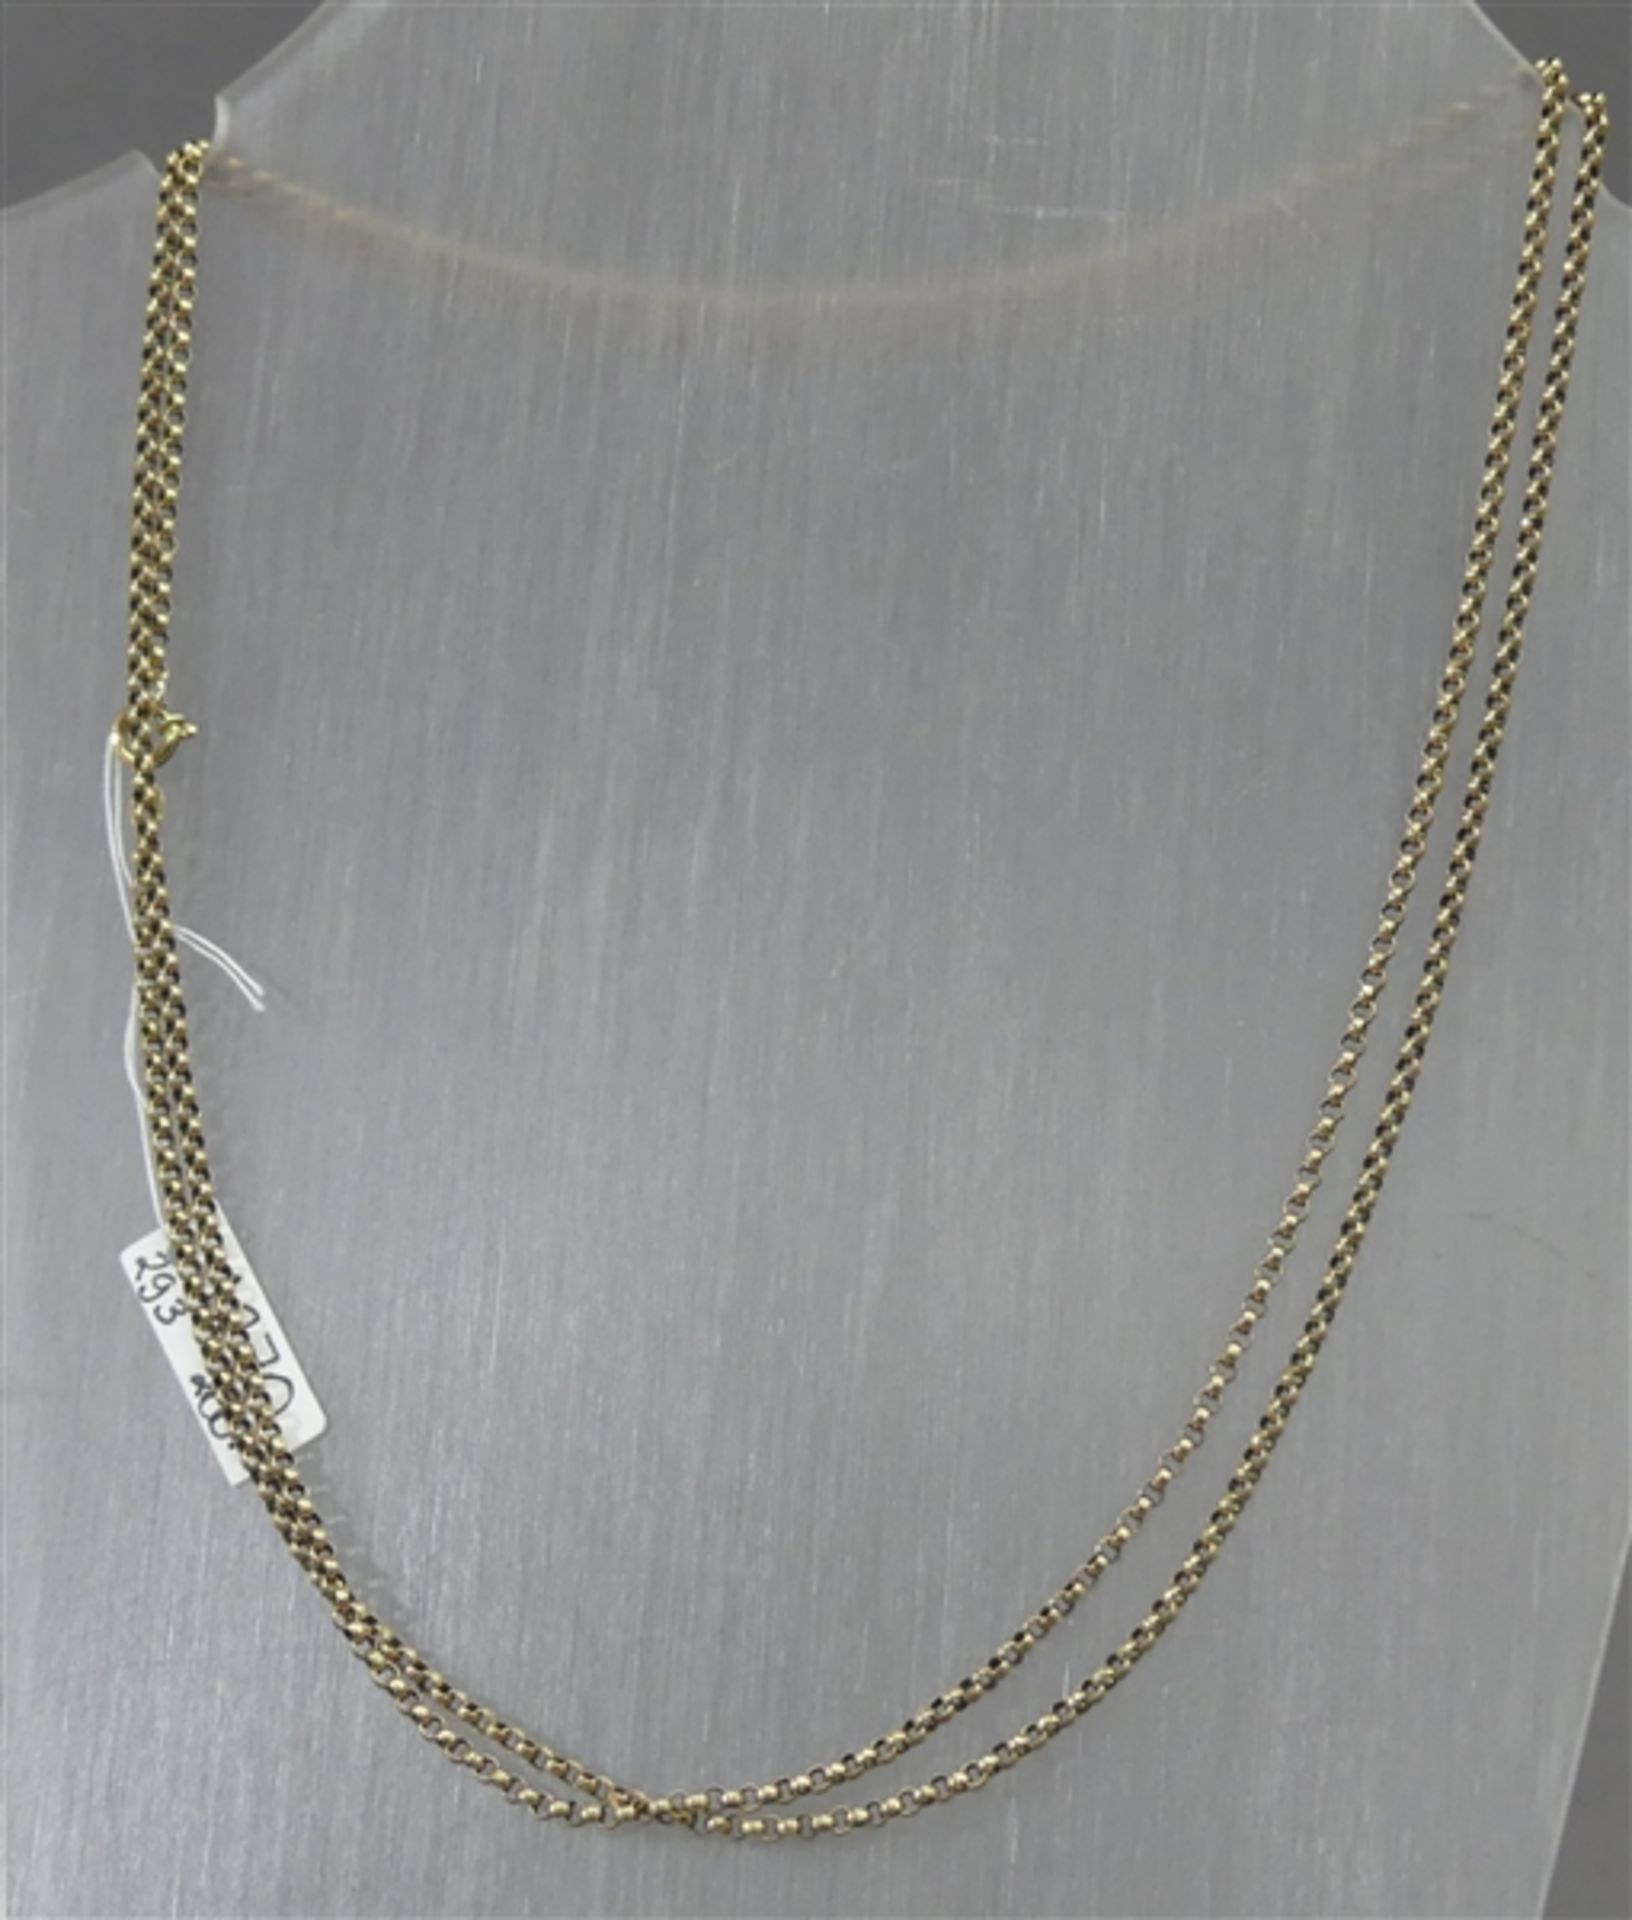 Halskette 8 kt. Gelbgold, Erbsenkette, ca. 9 g schwer, l 90 cm,